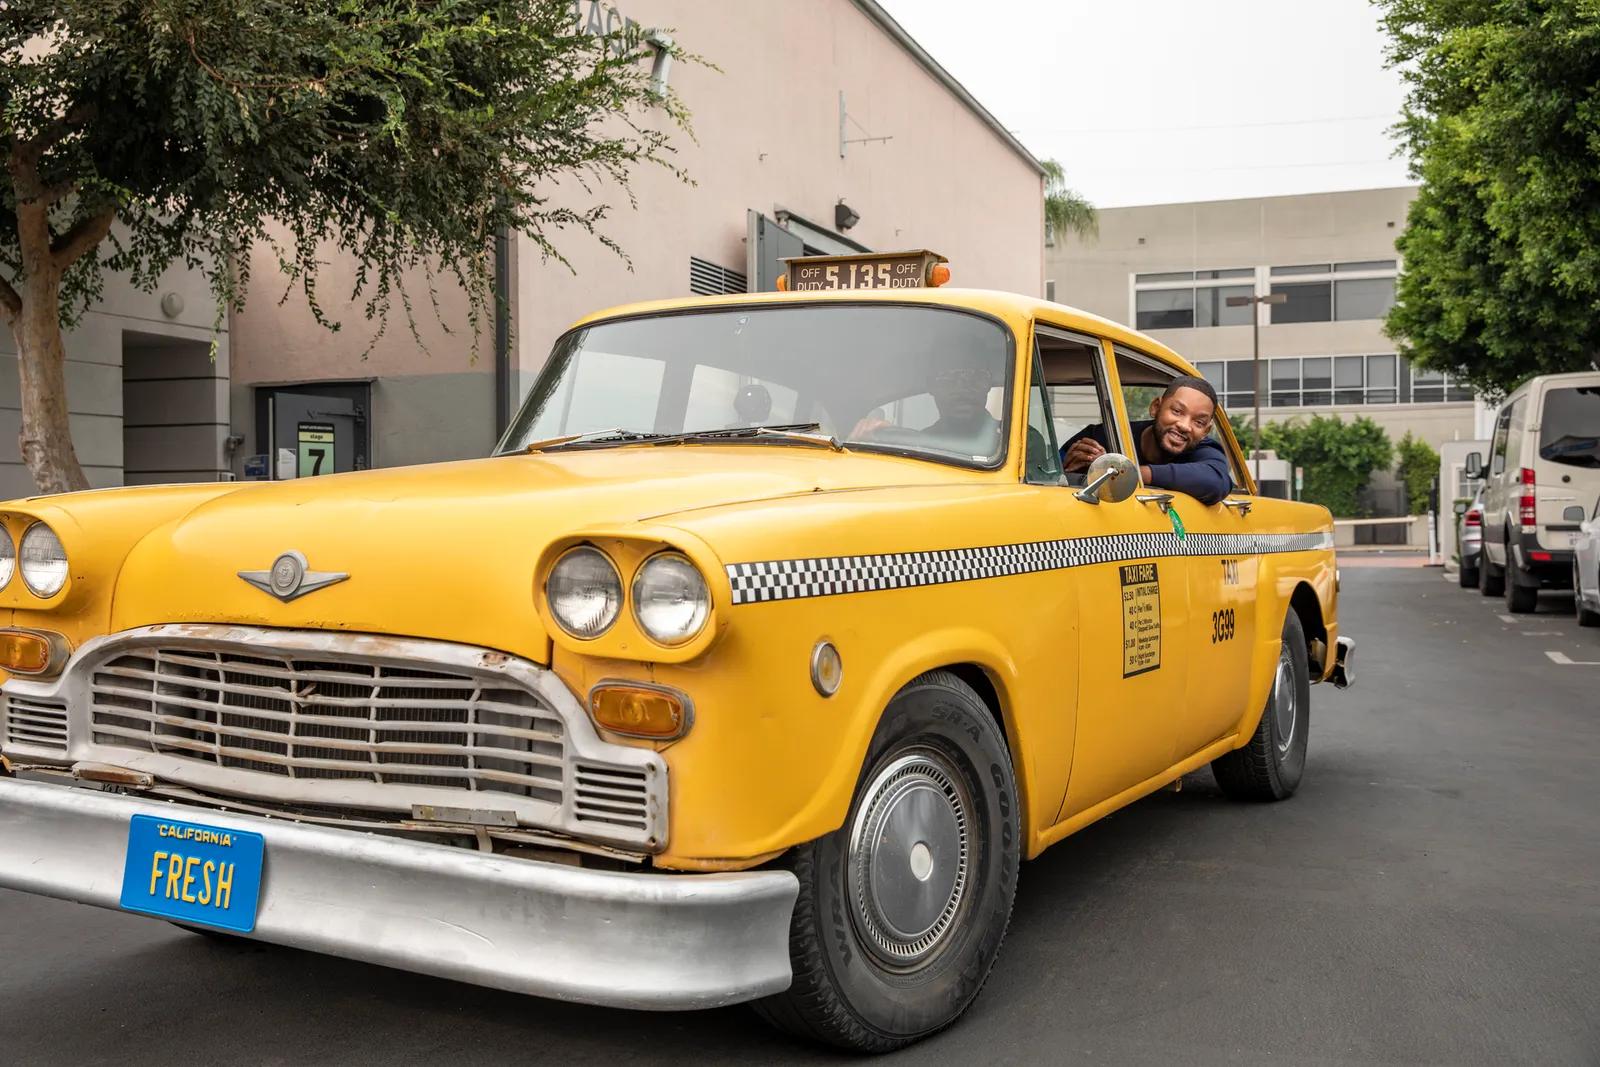 fresh prince taxi - Cómo se llamaban los personajes del Príncipe de Bel-Air